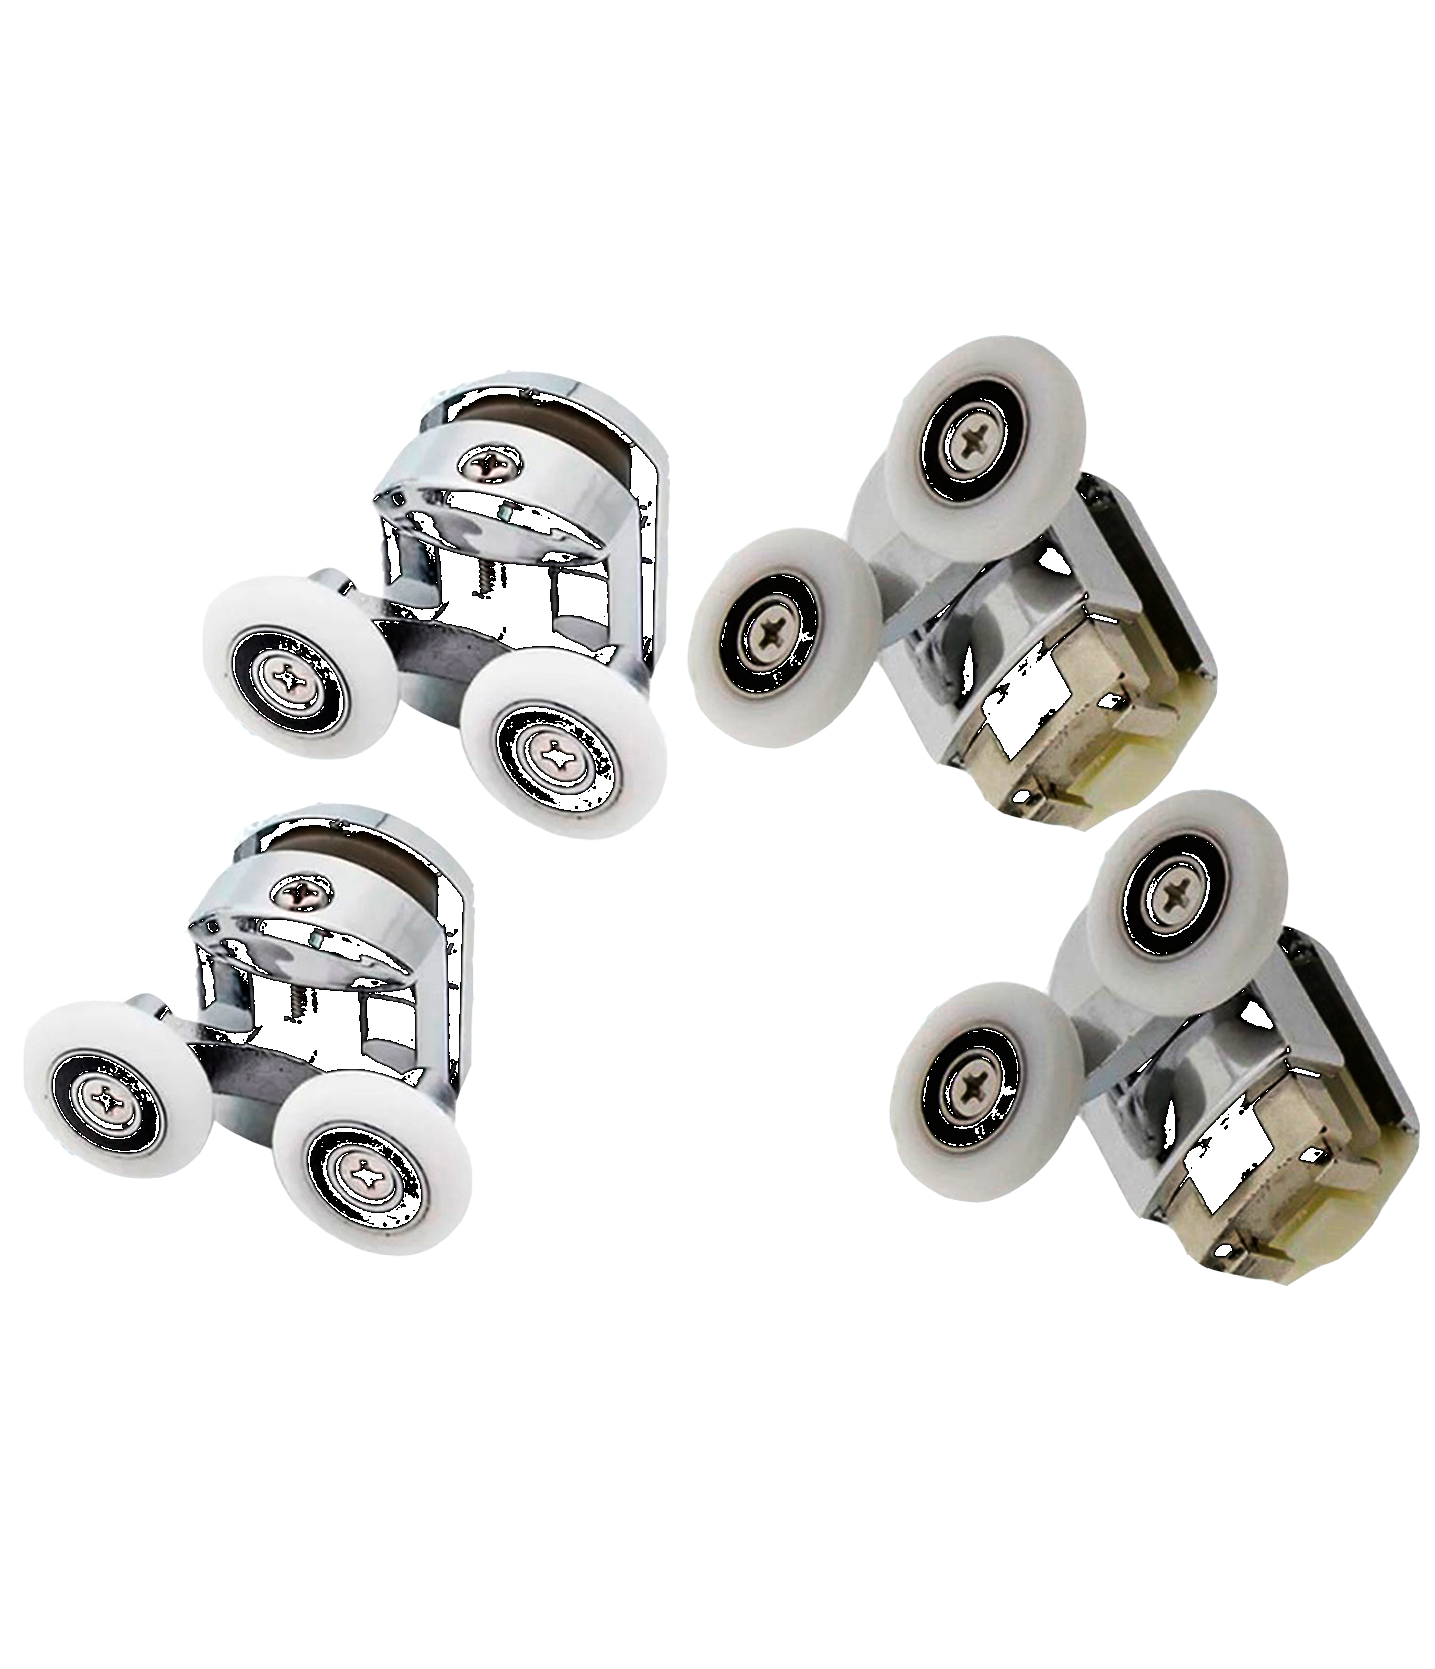 Комплект двойных роликов хромированных для душевой кабины диаметром 23 мм., S-R11-23-4 комплект колесиков для роликов душевых кабин st g 003 123 o 23 мм